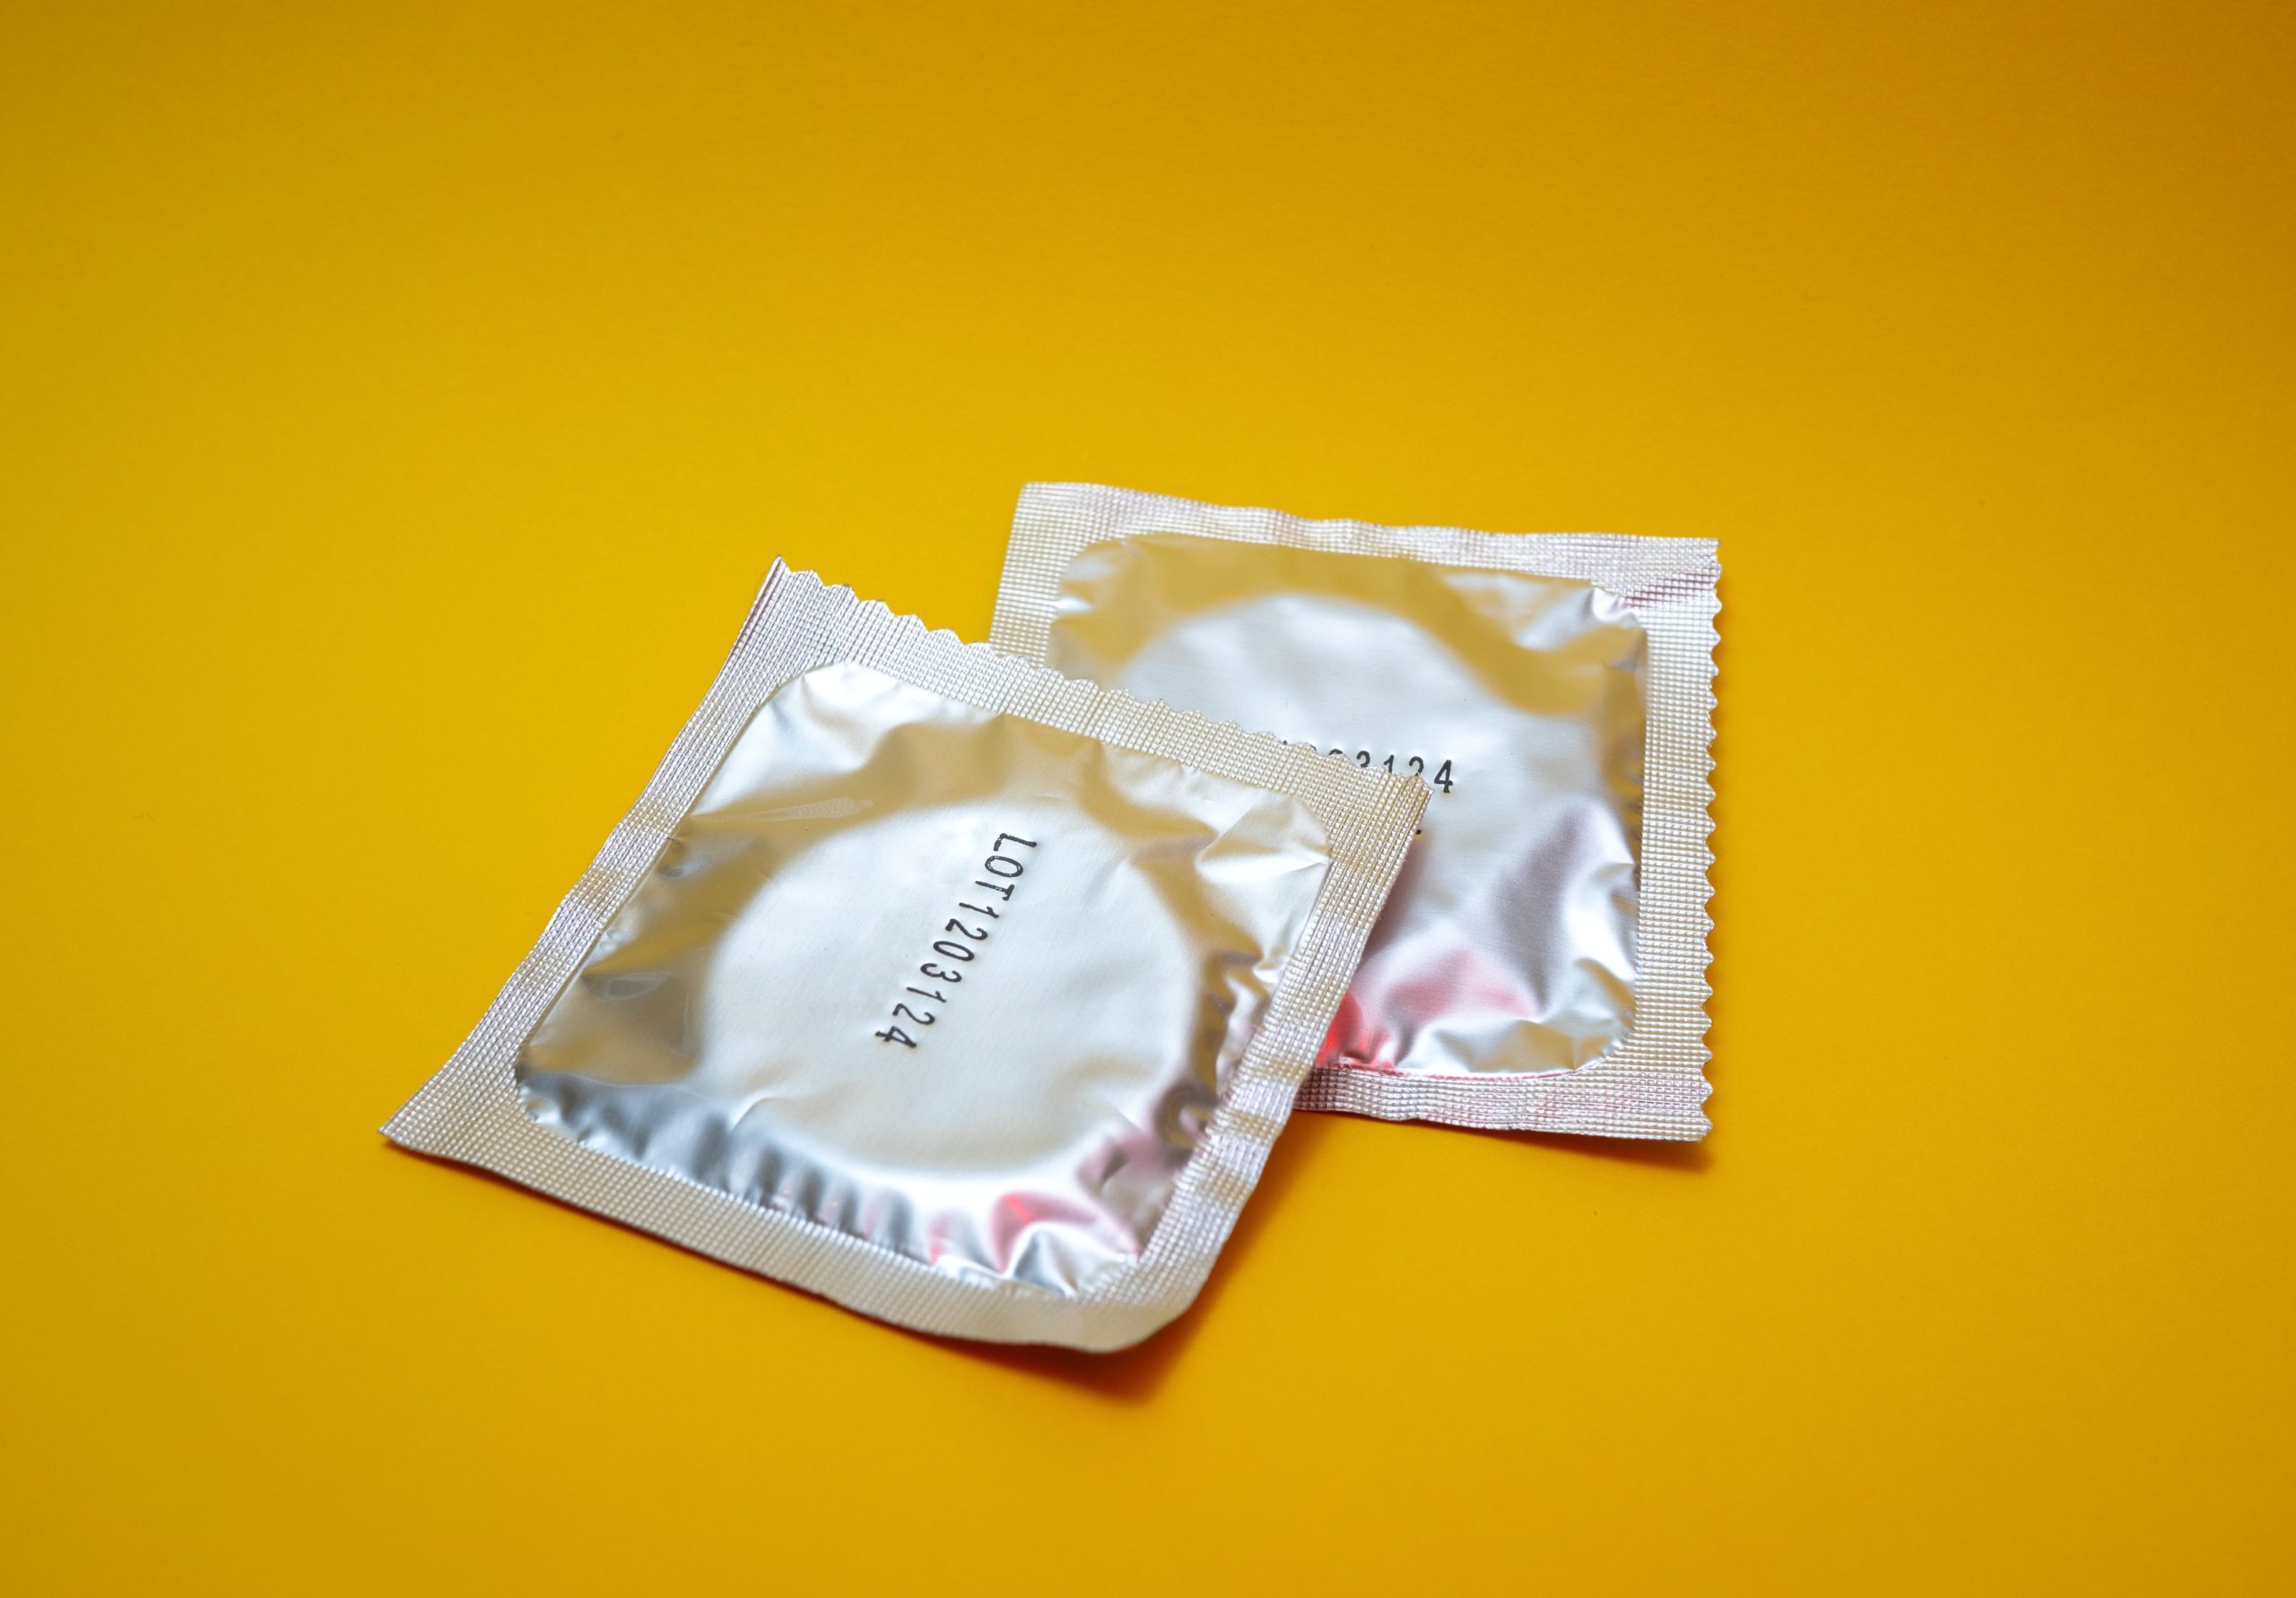 Lors d'une relation sexuelle, le préservatif s'est déchiré. Cela m ...